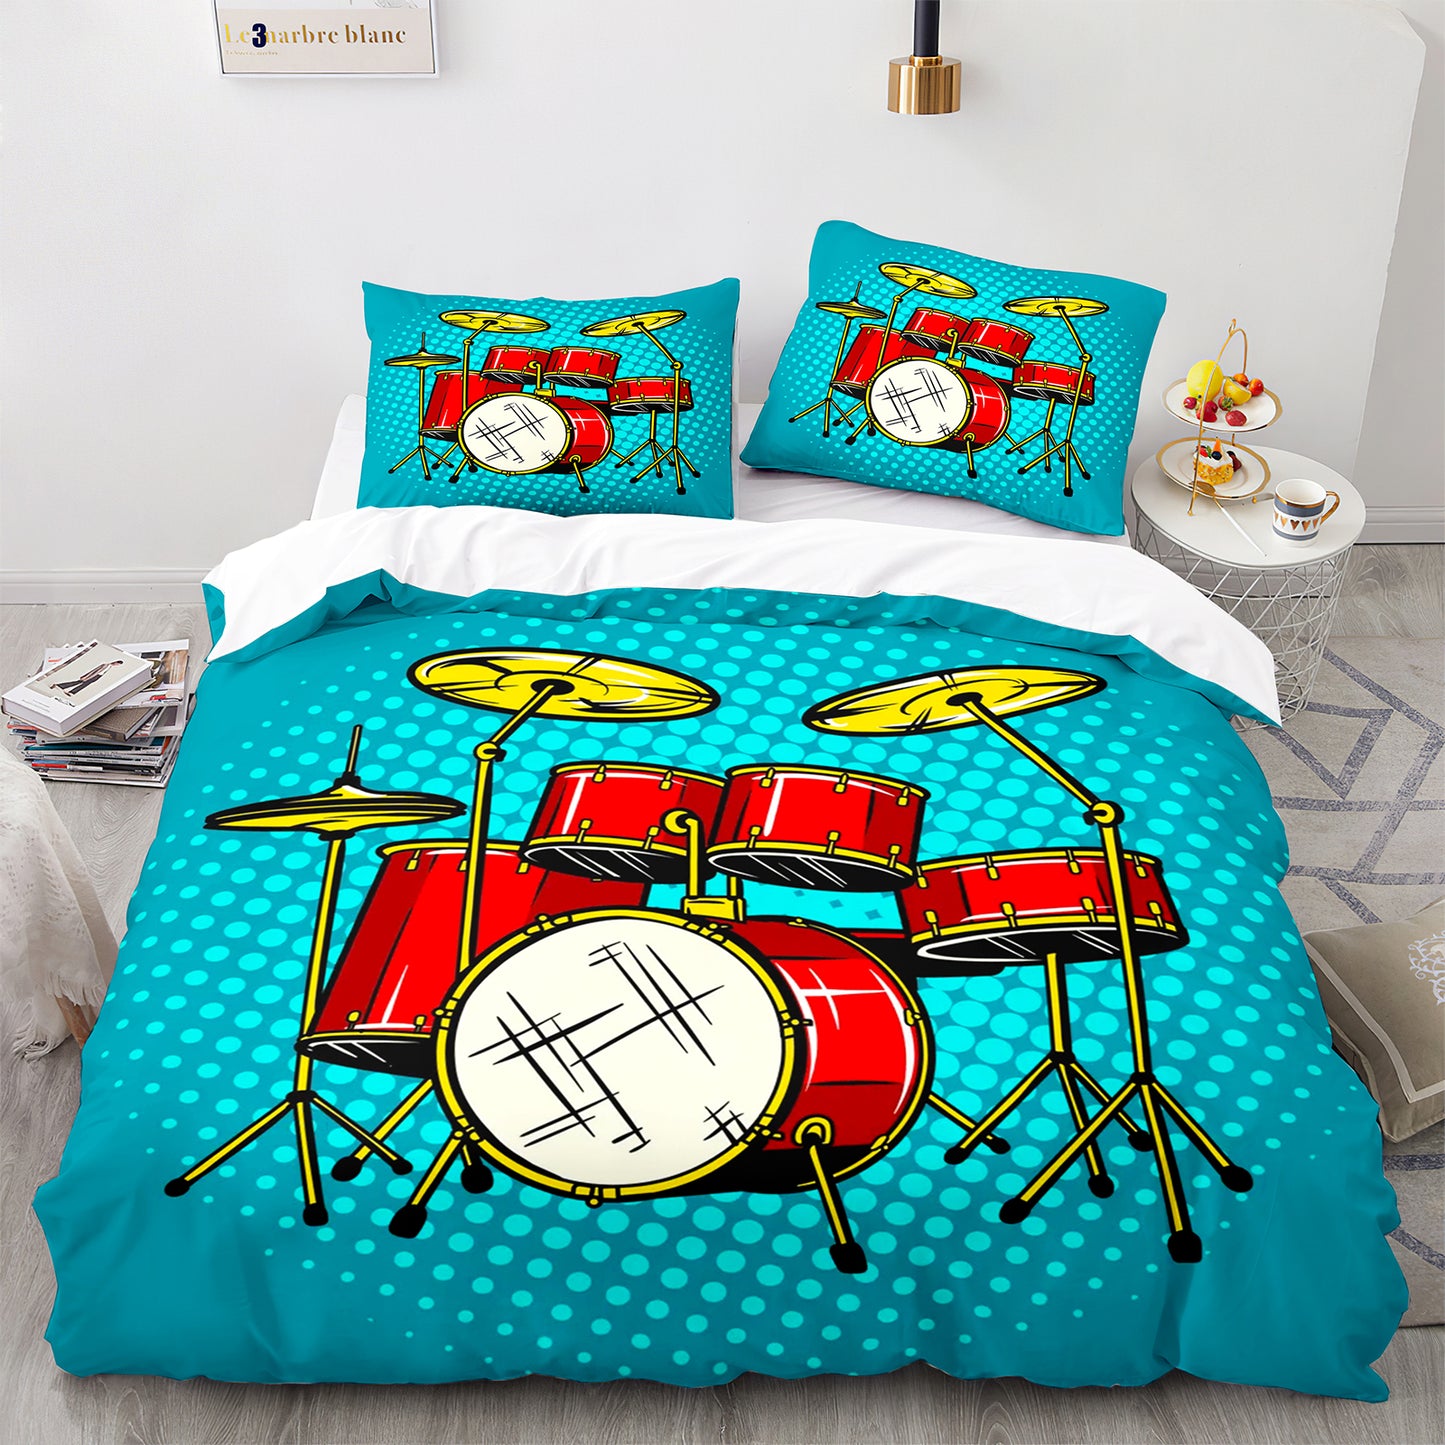 Cutom Bettbezug-Set Muster Chic Bettbezug King Size für Teenager Erwachsene Bettwäsche-Set mit Kissenbezügen JZG3010